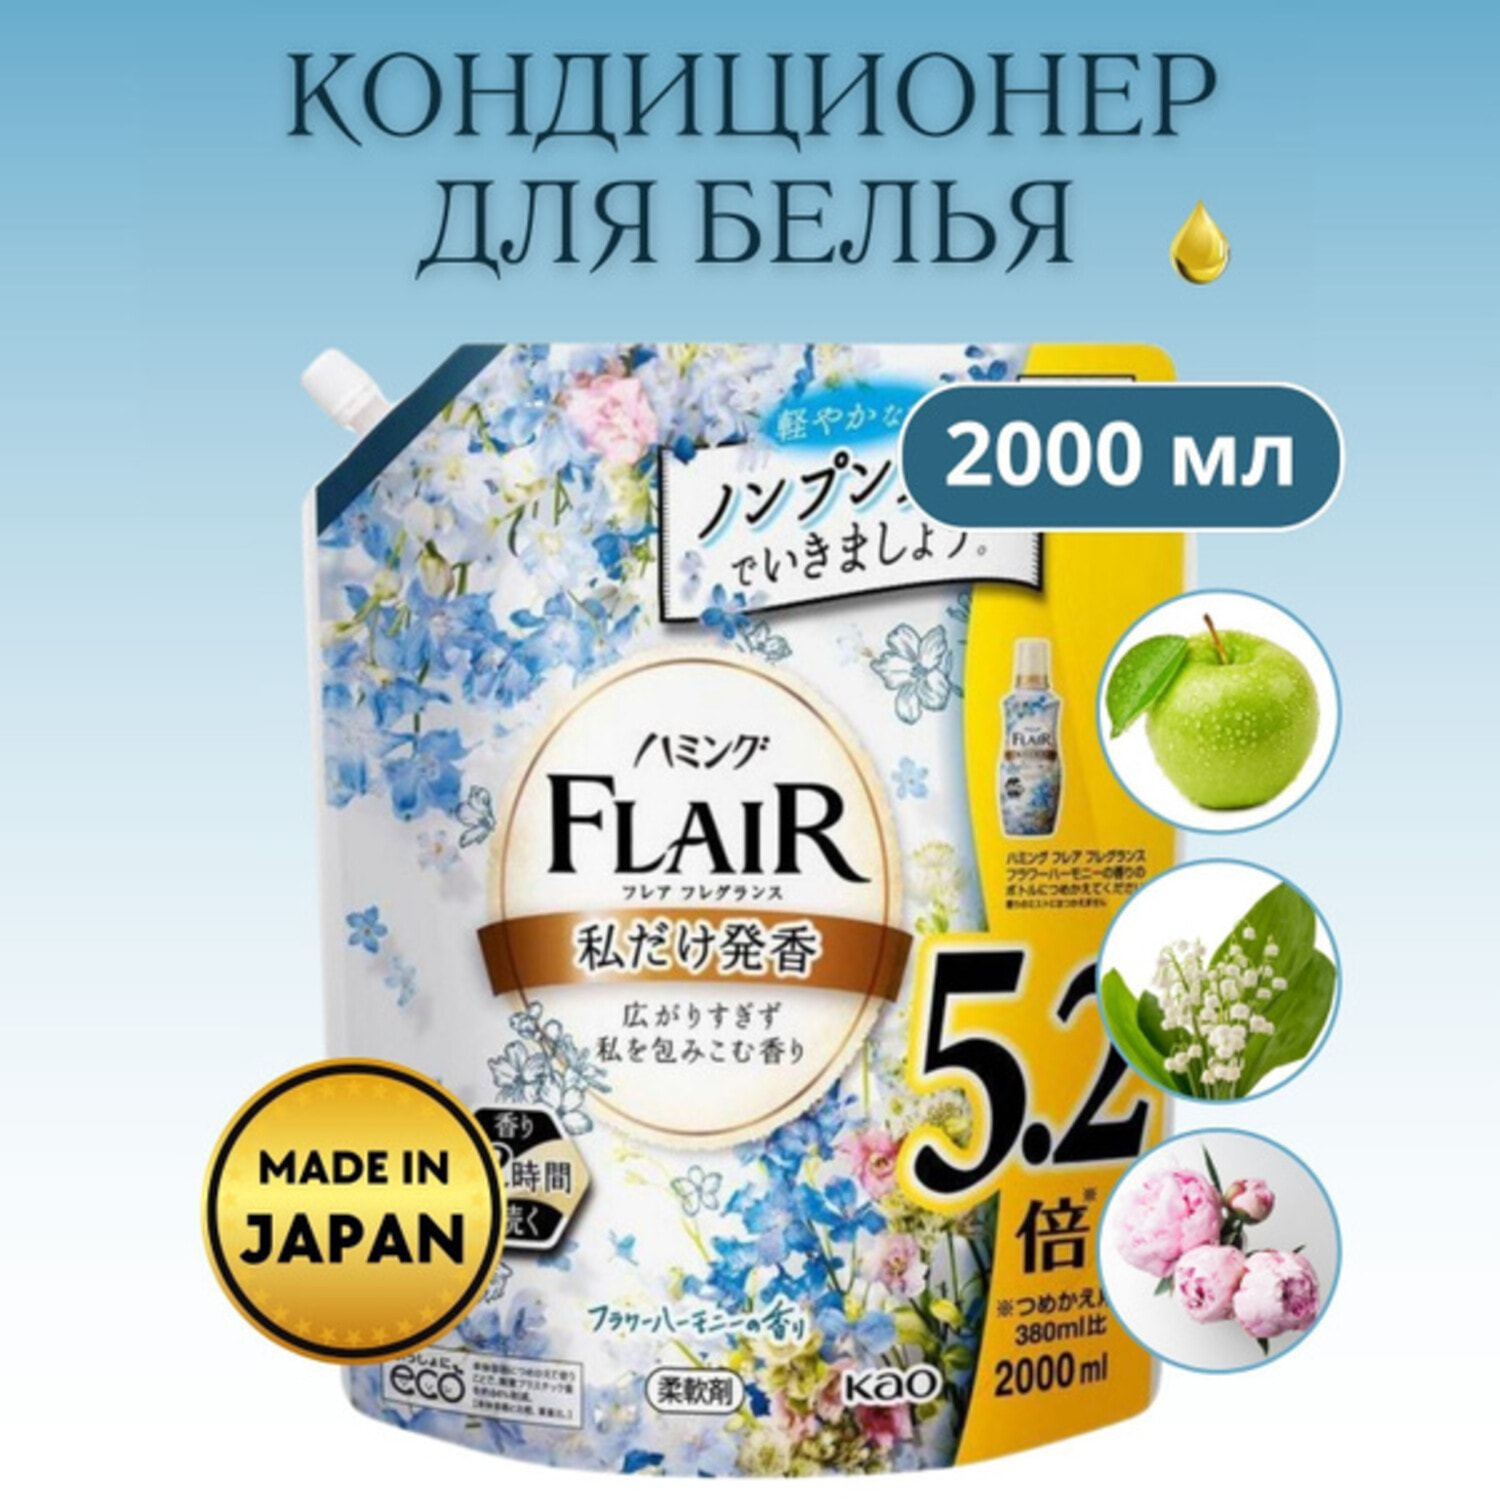 KAO Flair Fragrance Flower Harmony Кондиционер для белья, аромат цветочной гармонии, мягкая упаковка, 2000 мл. / 407412